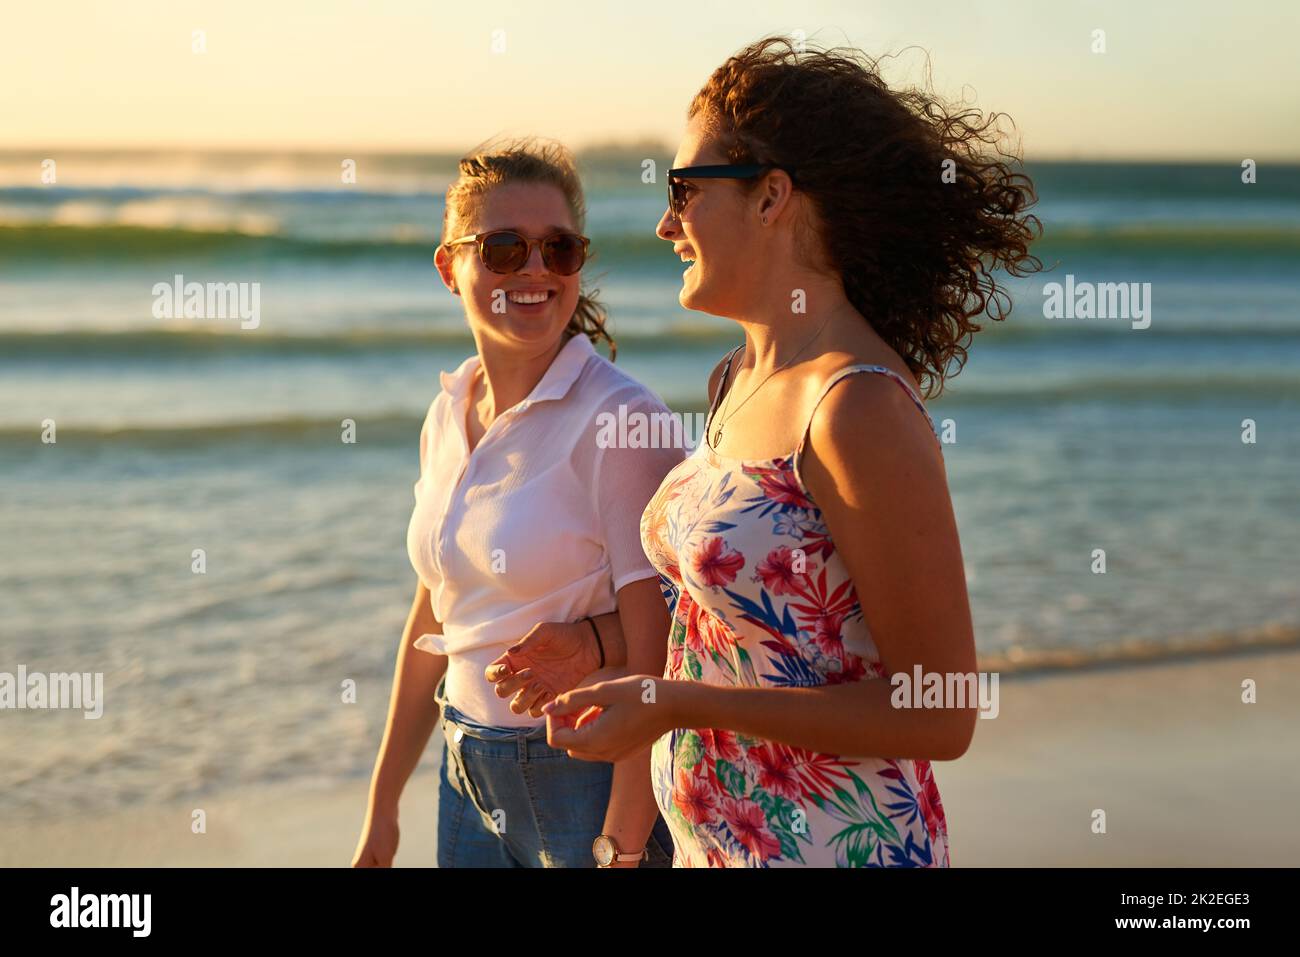 Wer einen Strandtag mit Bestie nicht mag. Eine kurze Aufnahme von zwei attraktiven jungen Freundinnen, die sich beim Strandspaziergang unterhalten. Stockfoto